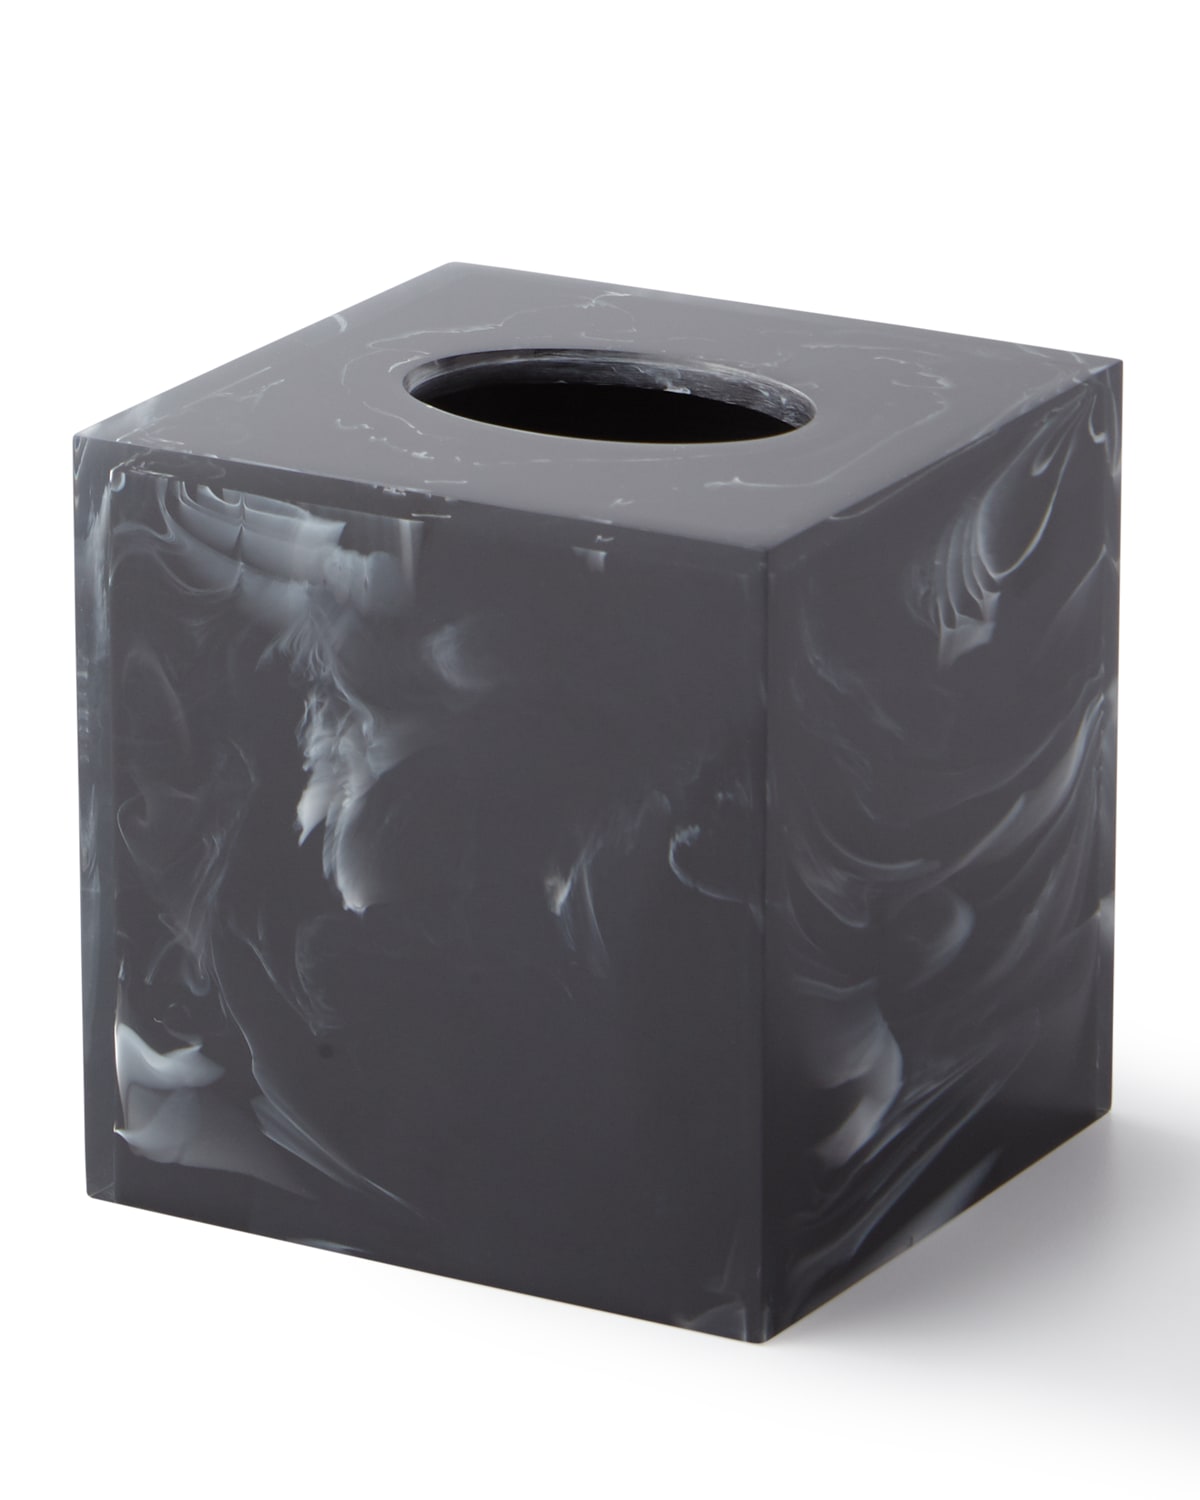 Kassatex Ducale Tissue Box Holder In Black